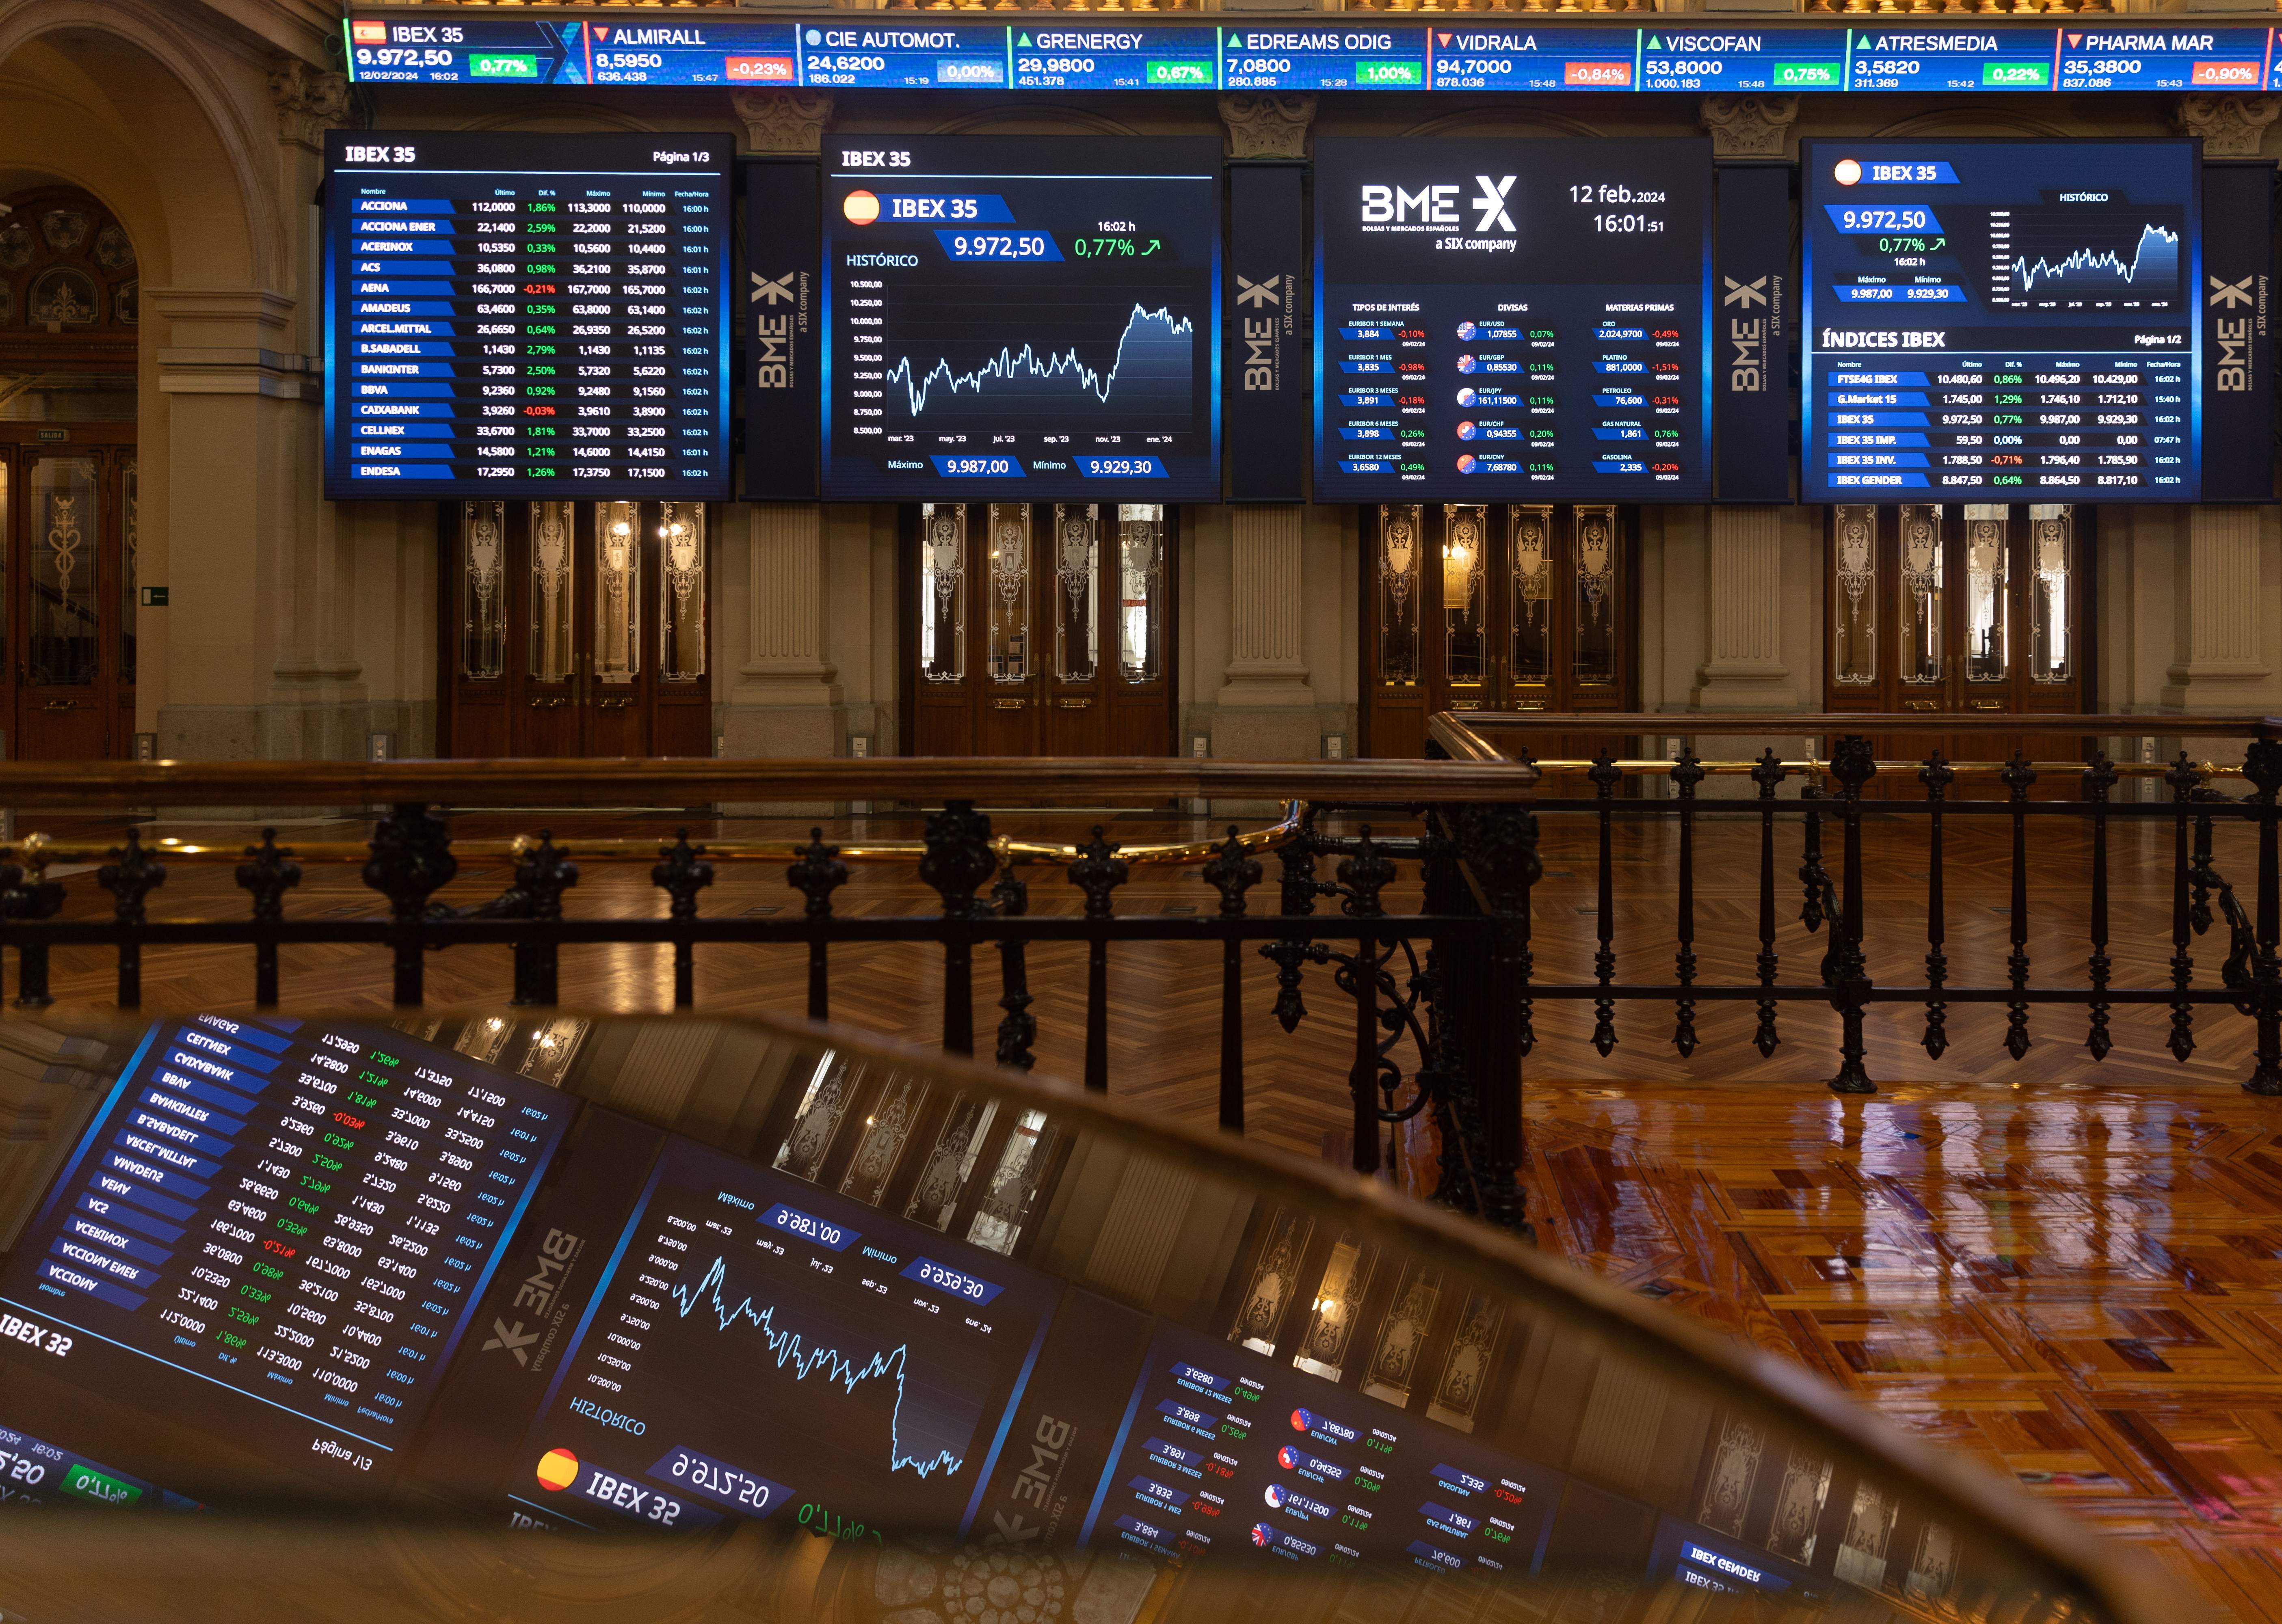 El IBEX cae un 0,59% arrastrado por Wall Street y el dato de inflación de Estados Unidos